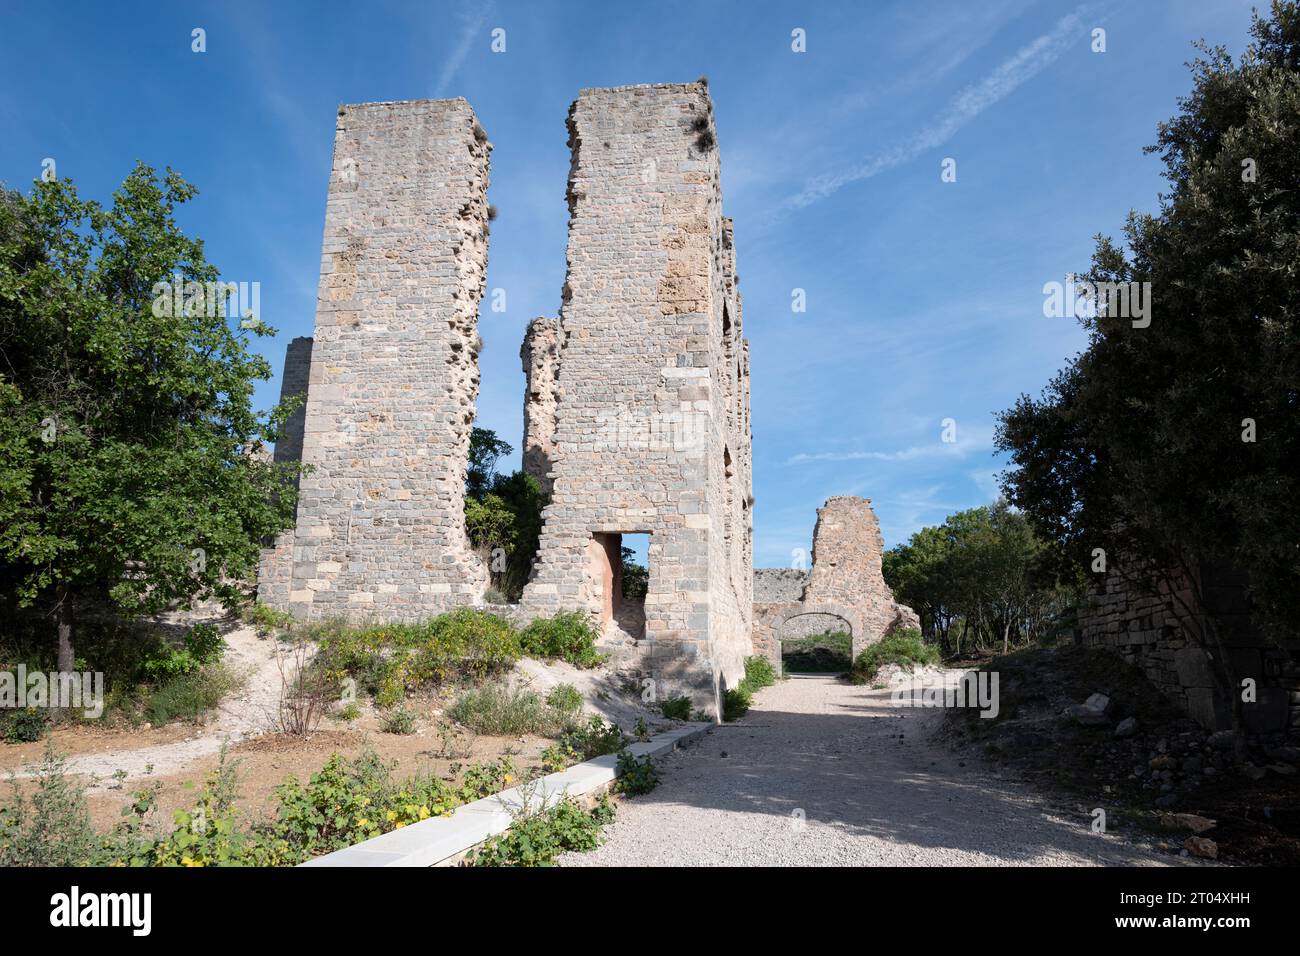 Das Schloss von Tourves in Frankreich ist eine Burg aus dem 18. Jahrhundert, die heute in Ruinen liegt. Einst eine große Residenz, hat sie sich seither in einen Park verwandelt Stockfoto